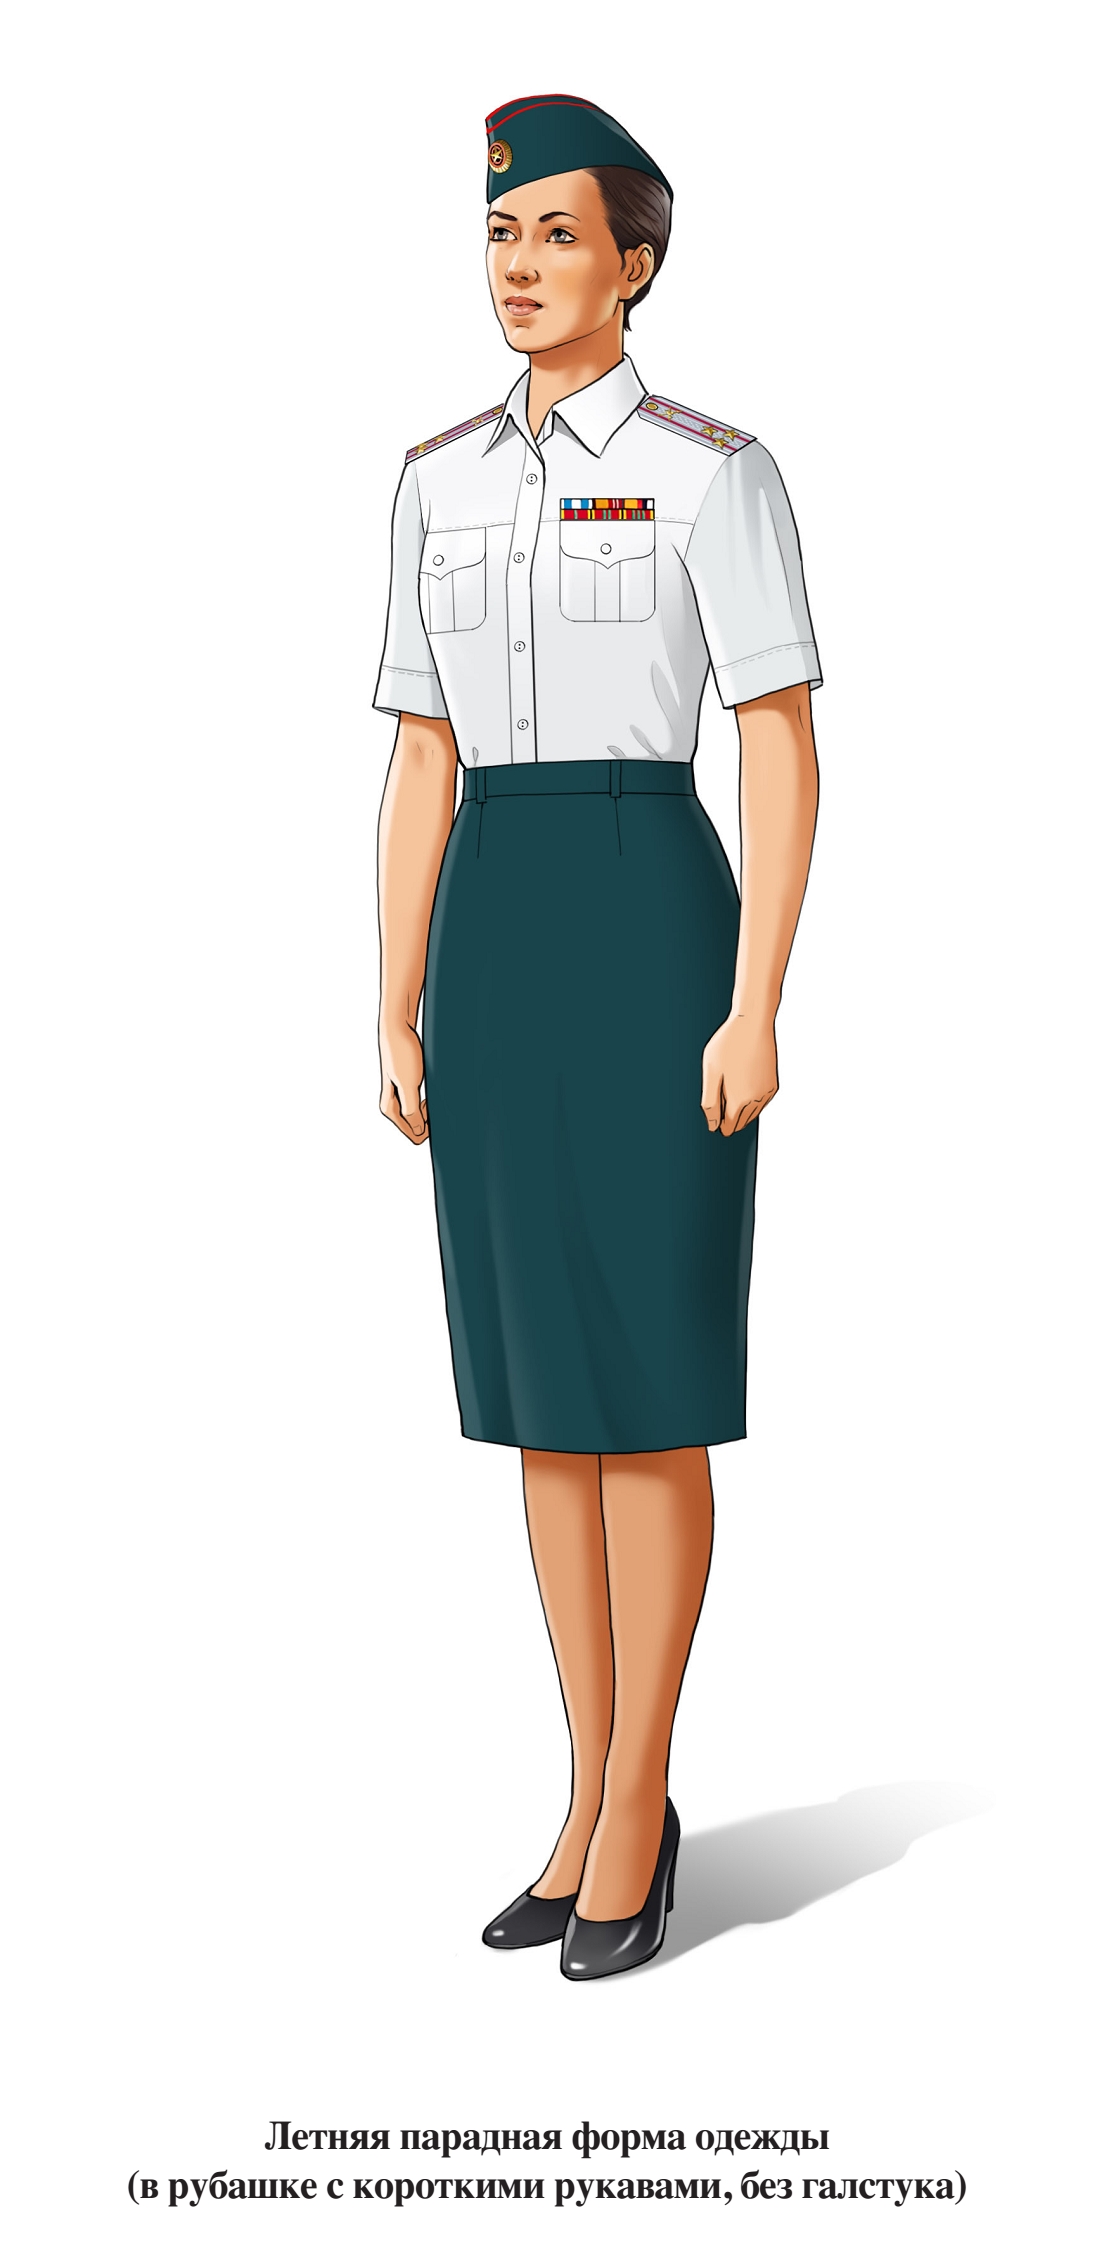 Летняя парадная форма военнослужащих женского пола, в юбке и блузке с коротким рукавом, без галстука